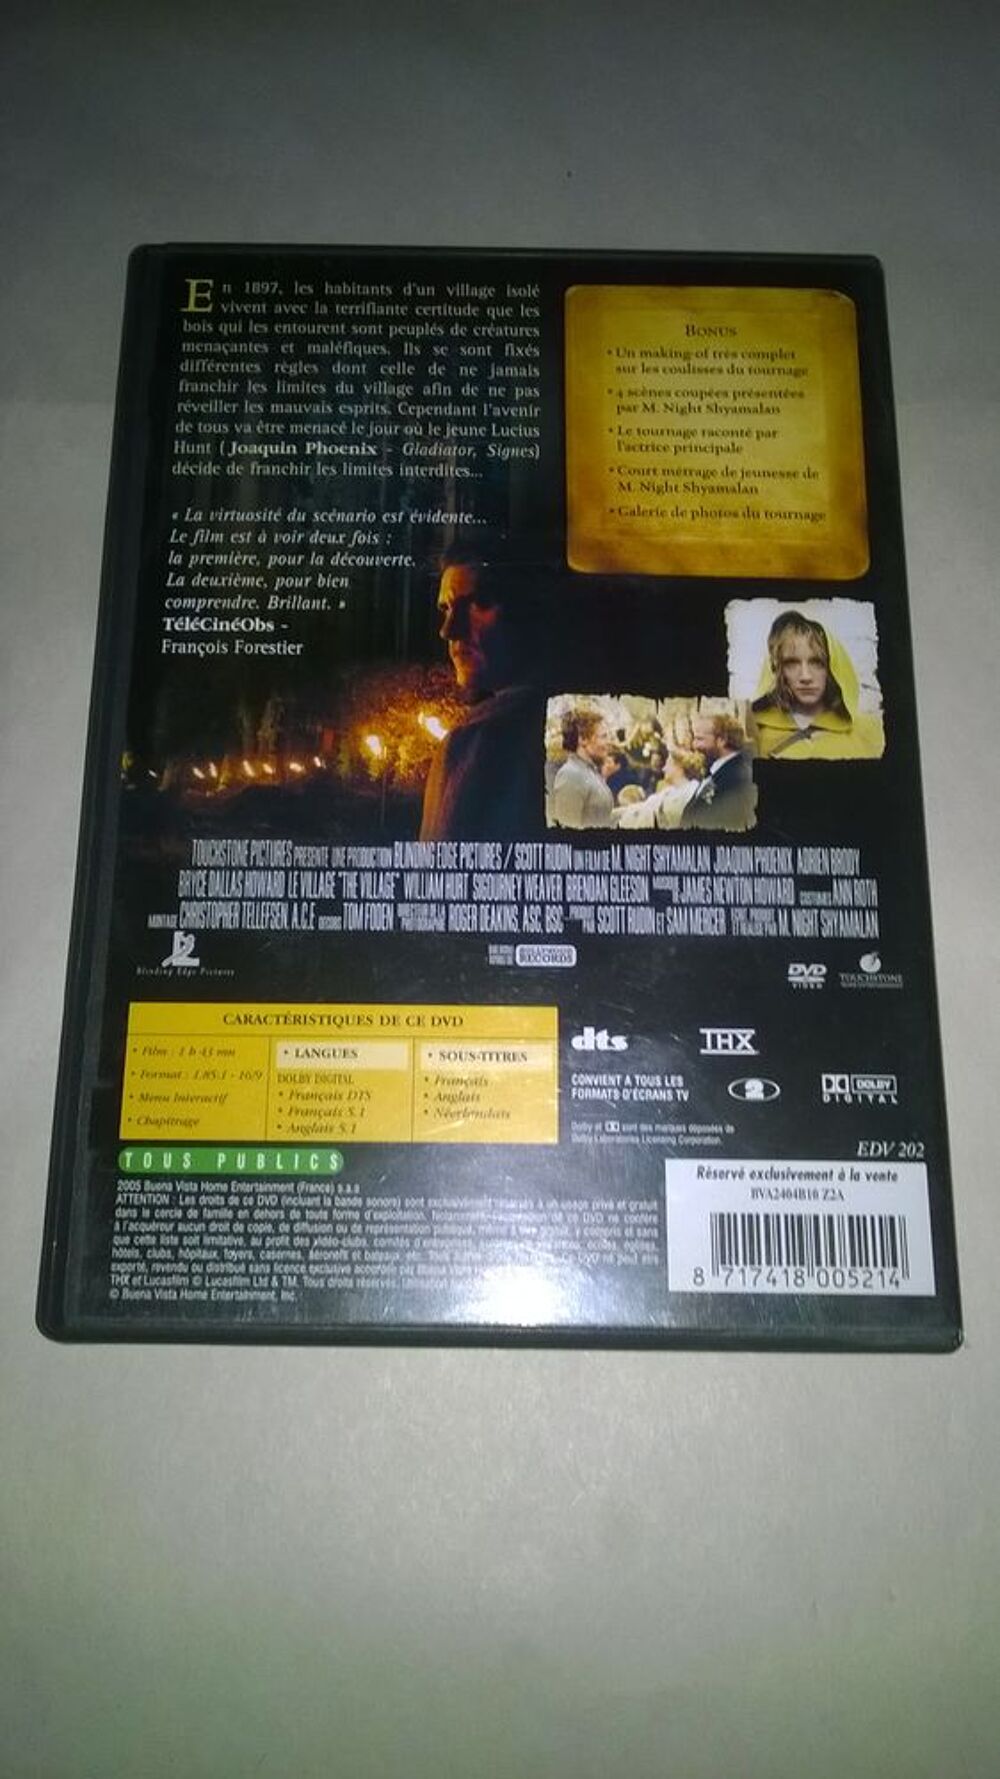 DVD Le Village
2005
Excellent etat
En Fran&ccedil;ais
A la fin DVD et blu-ray